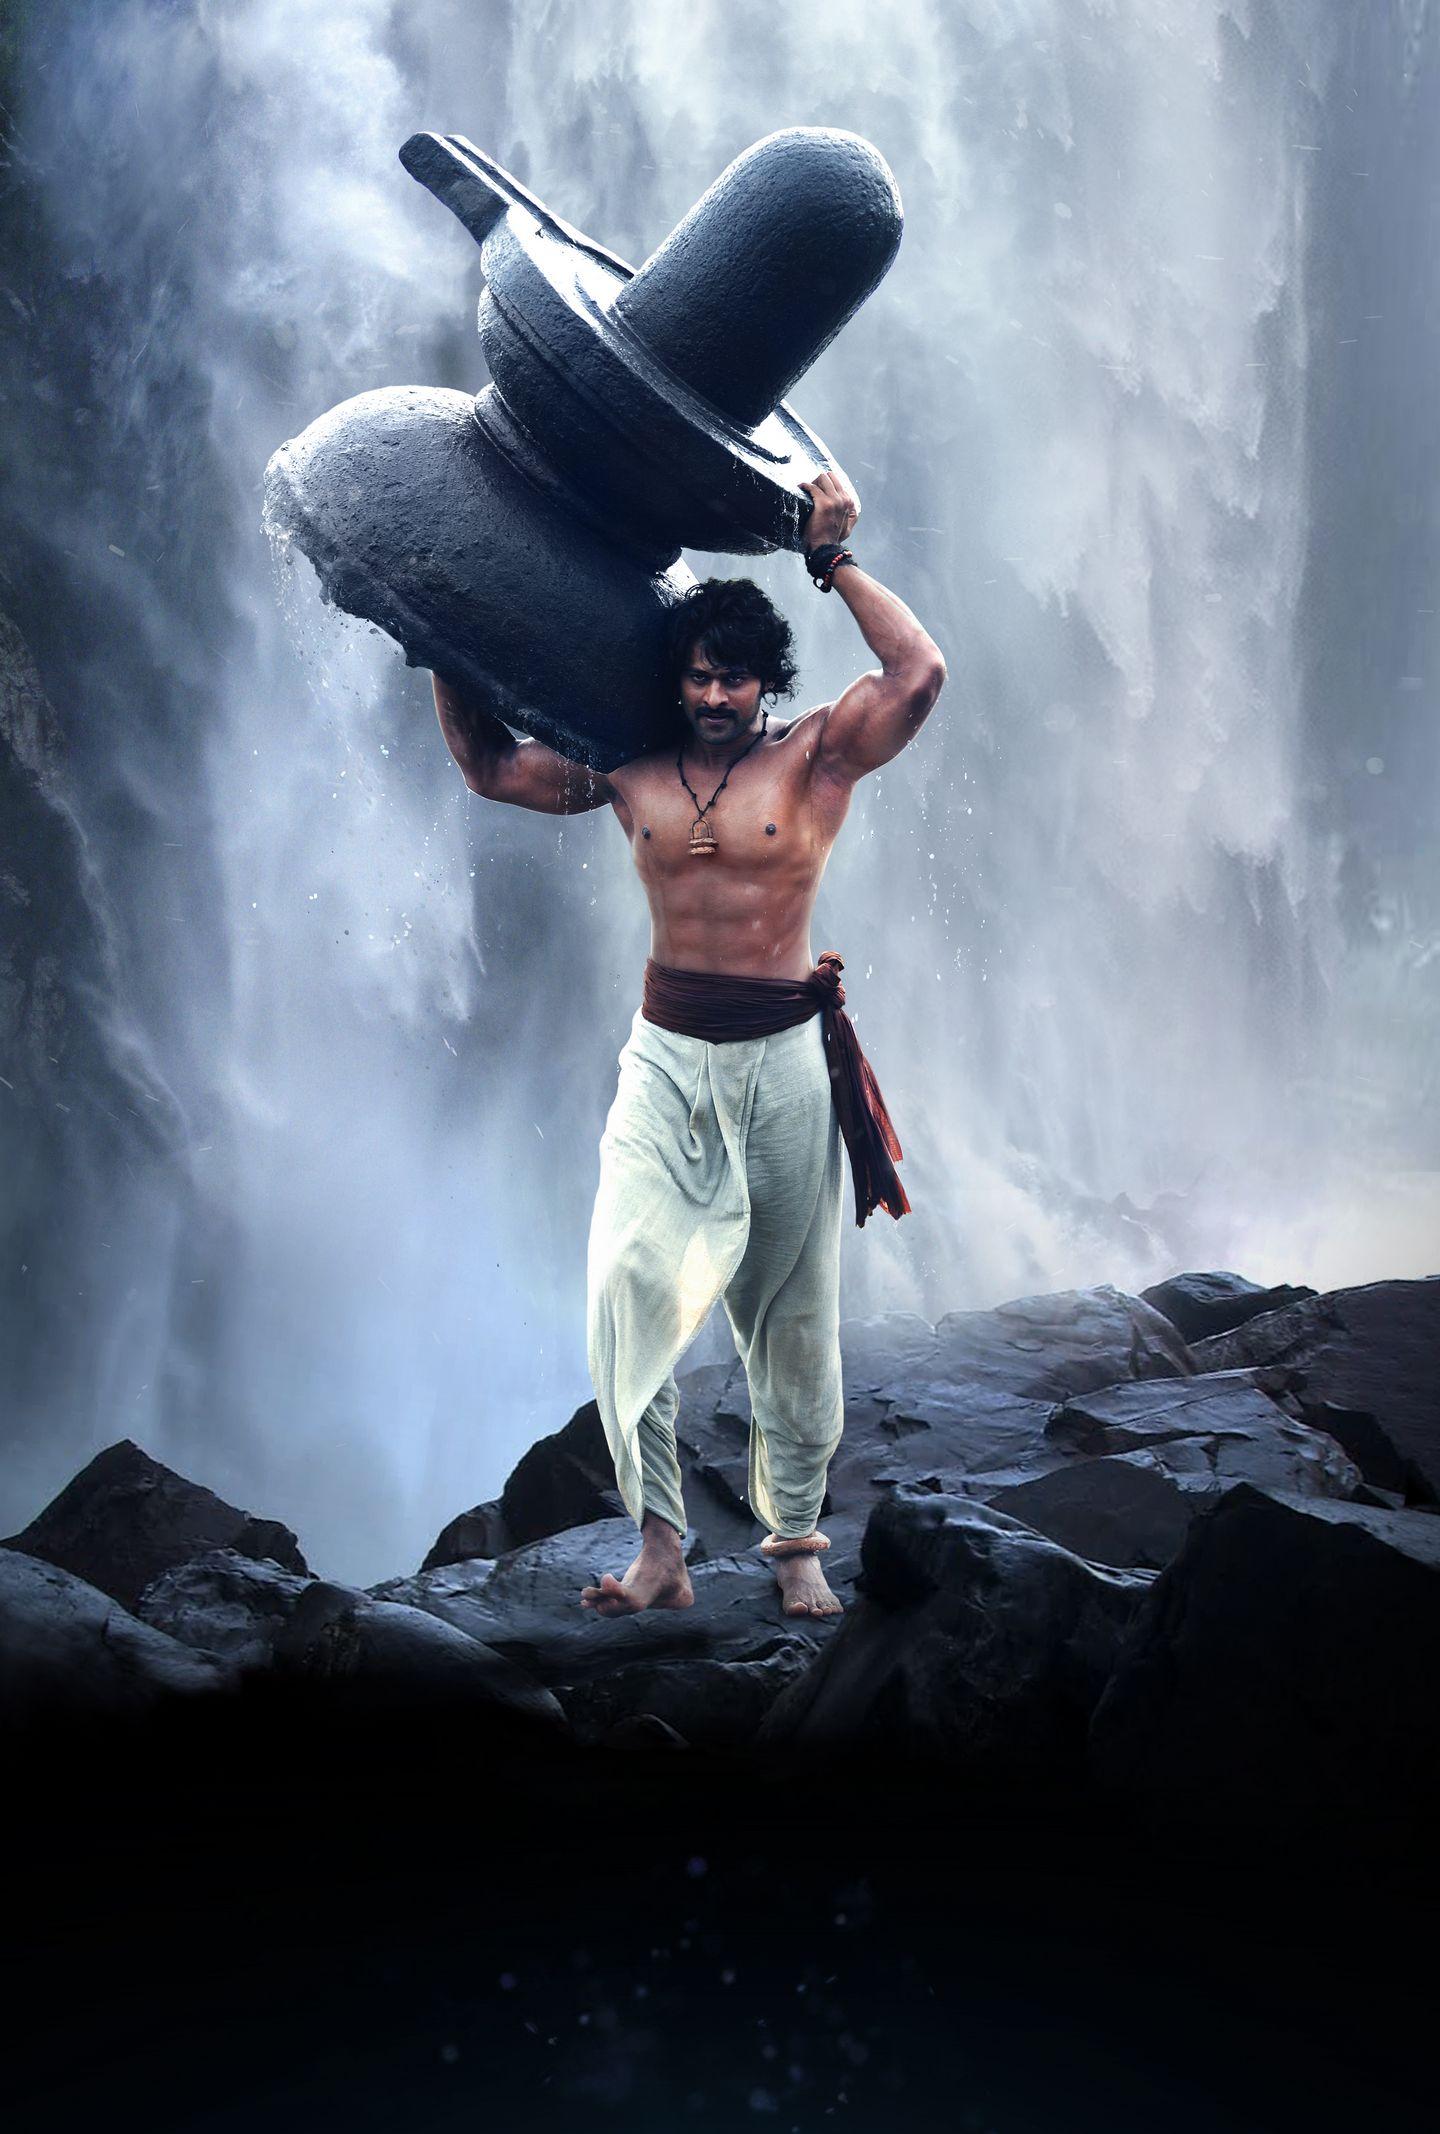 Baahubali Movie Images 